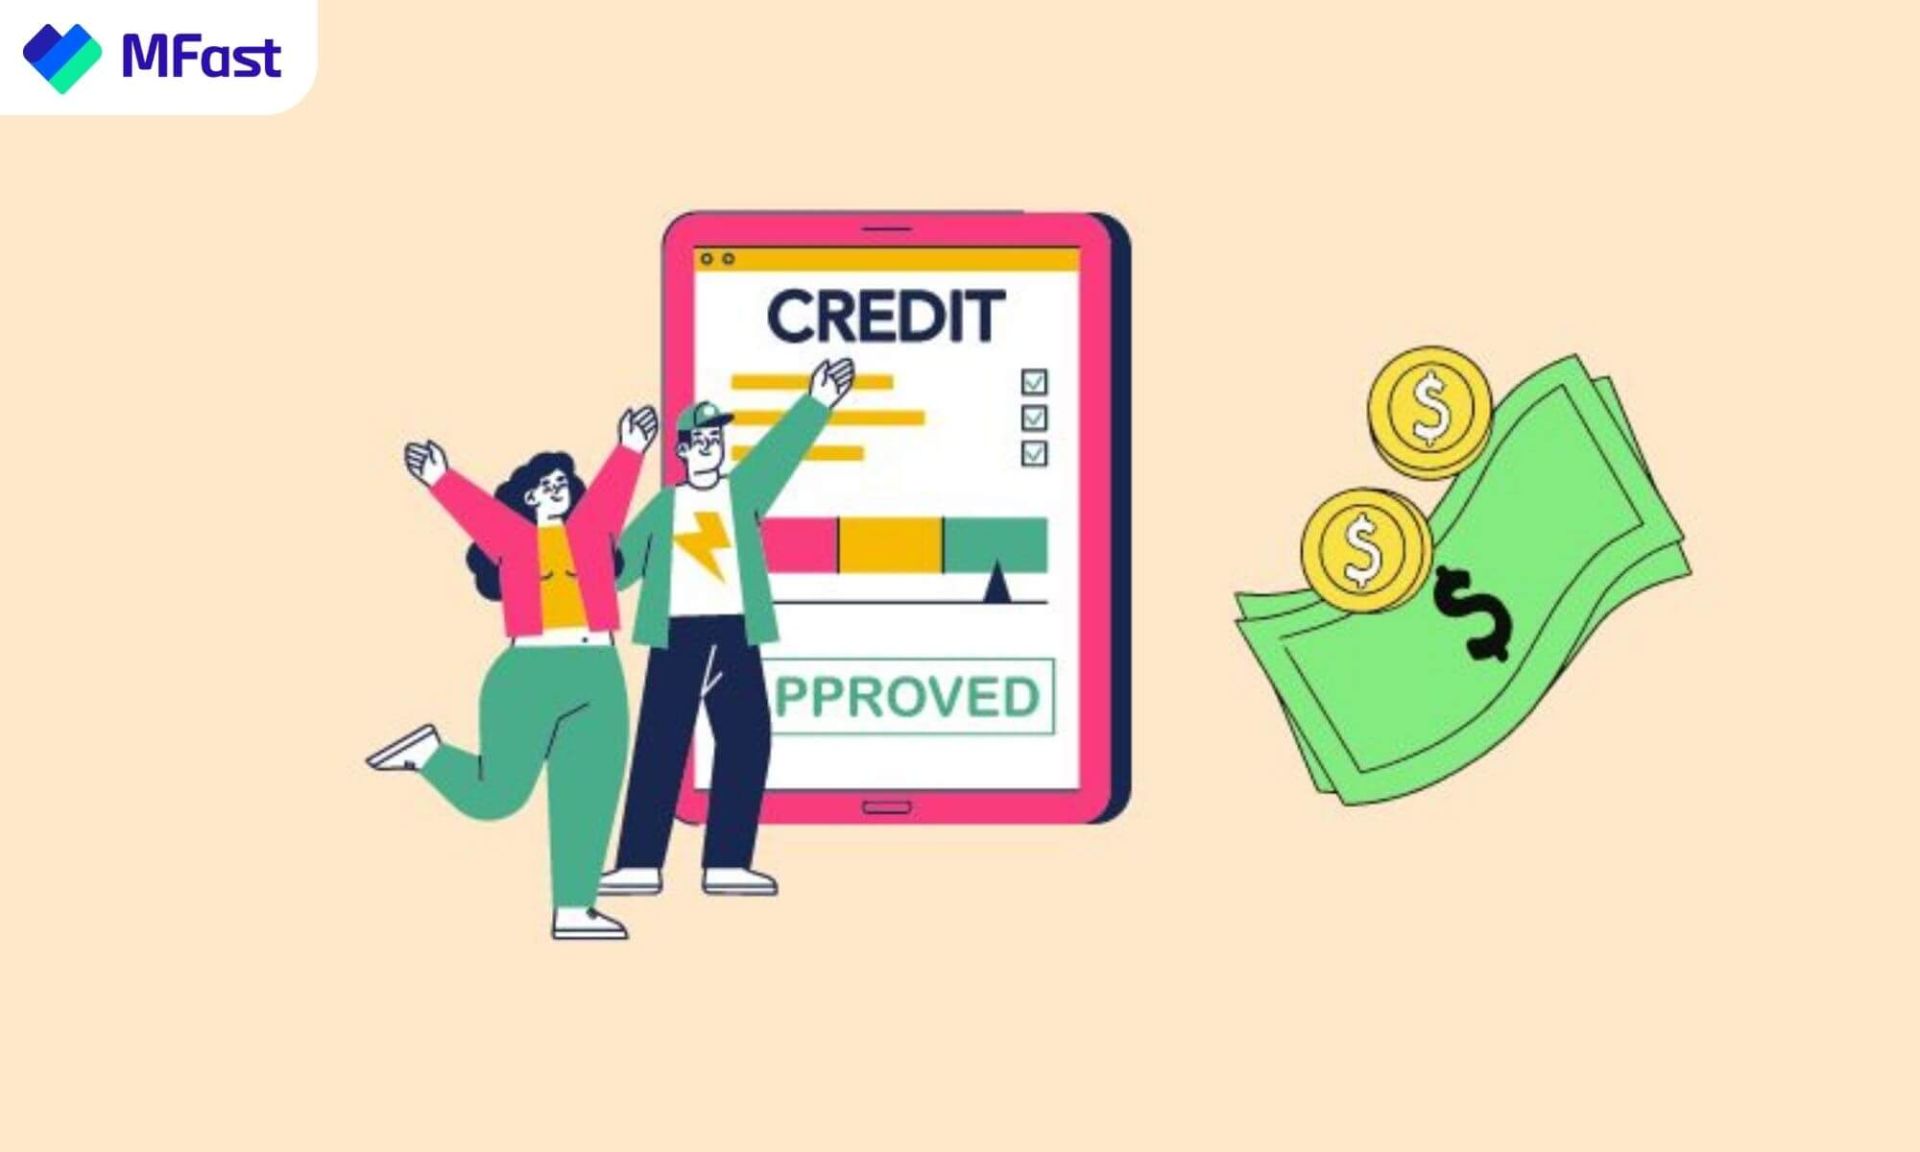 Giữ điểm tín dụng cá nhân tốt giúp duyệt hồ sơ mở thẻ nhanh hơn